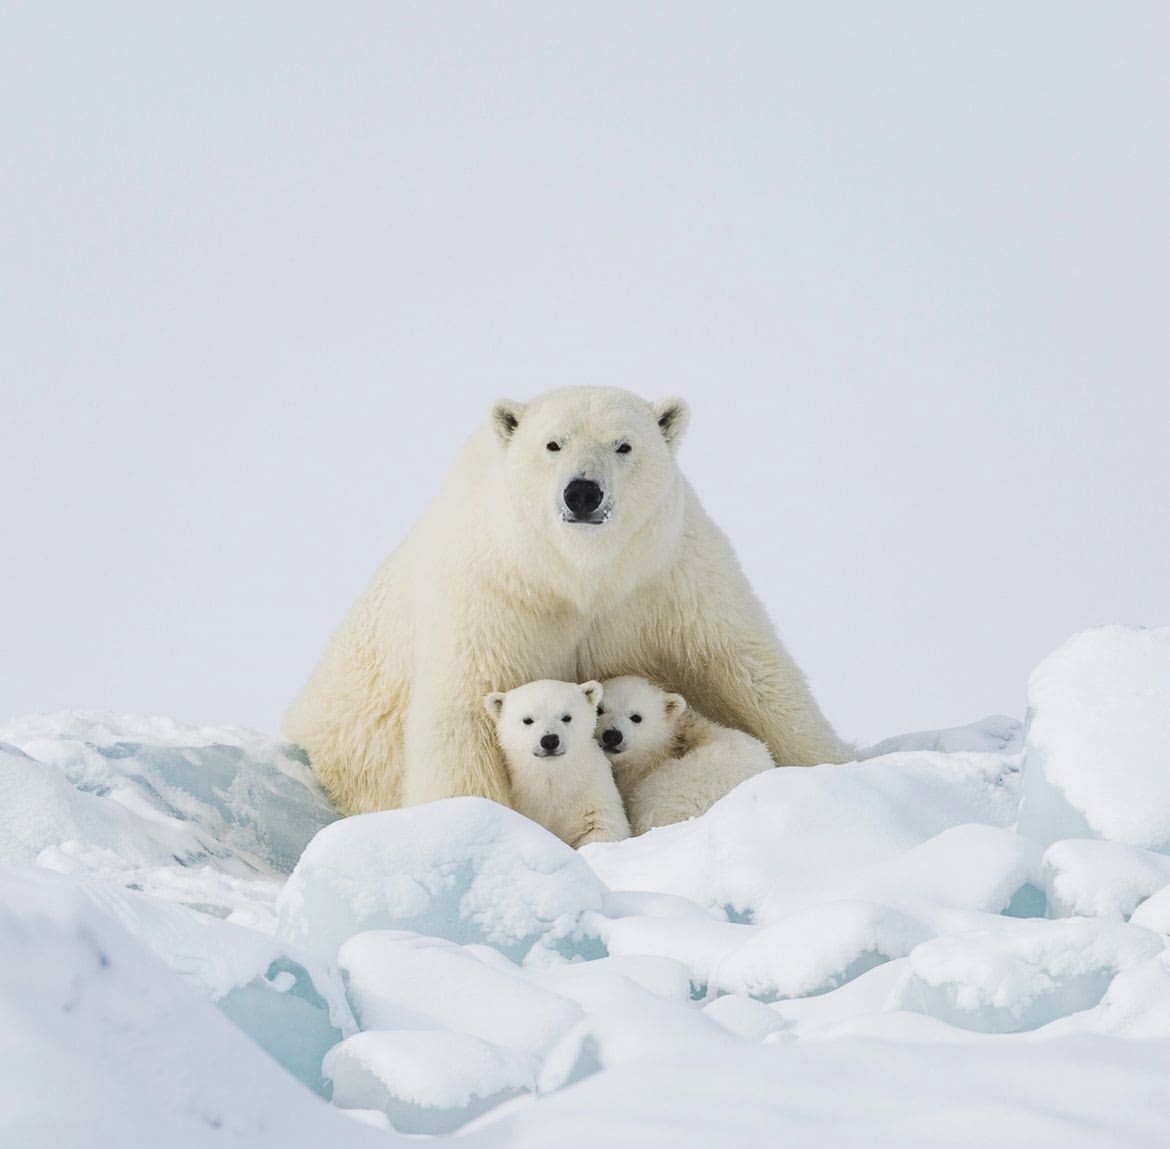 Female polar bear guarding her cubs